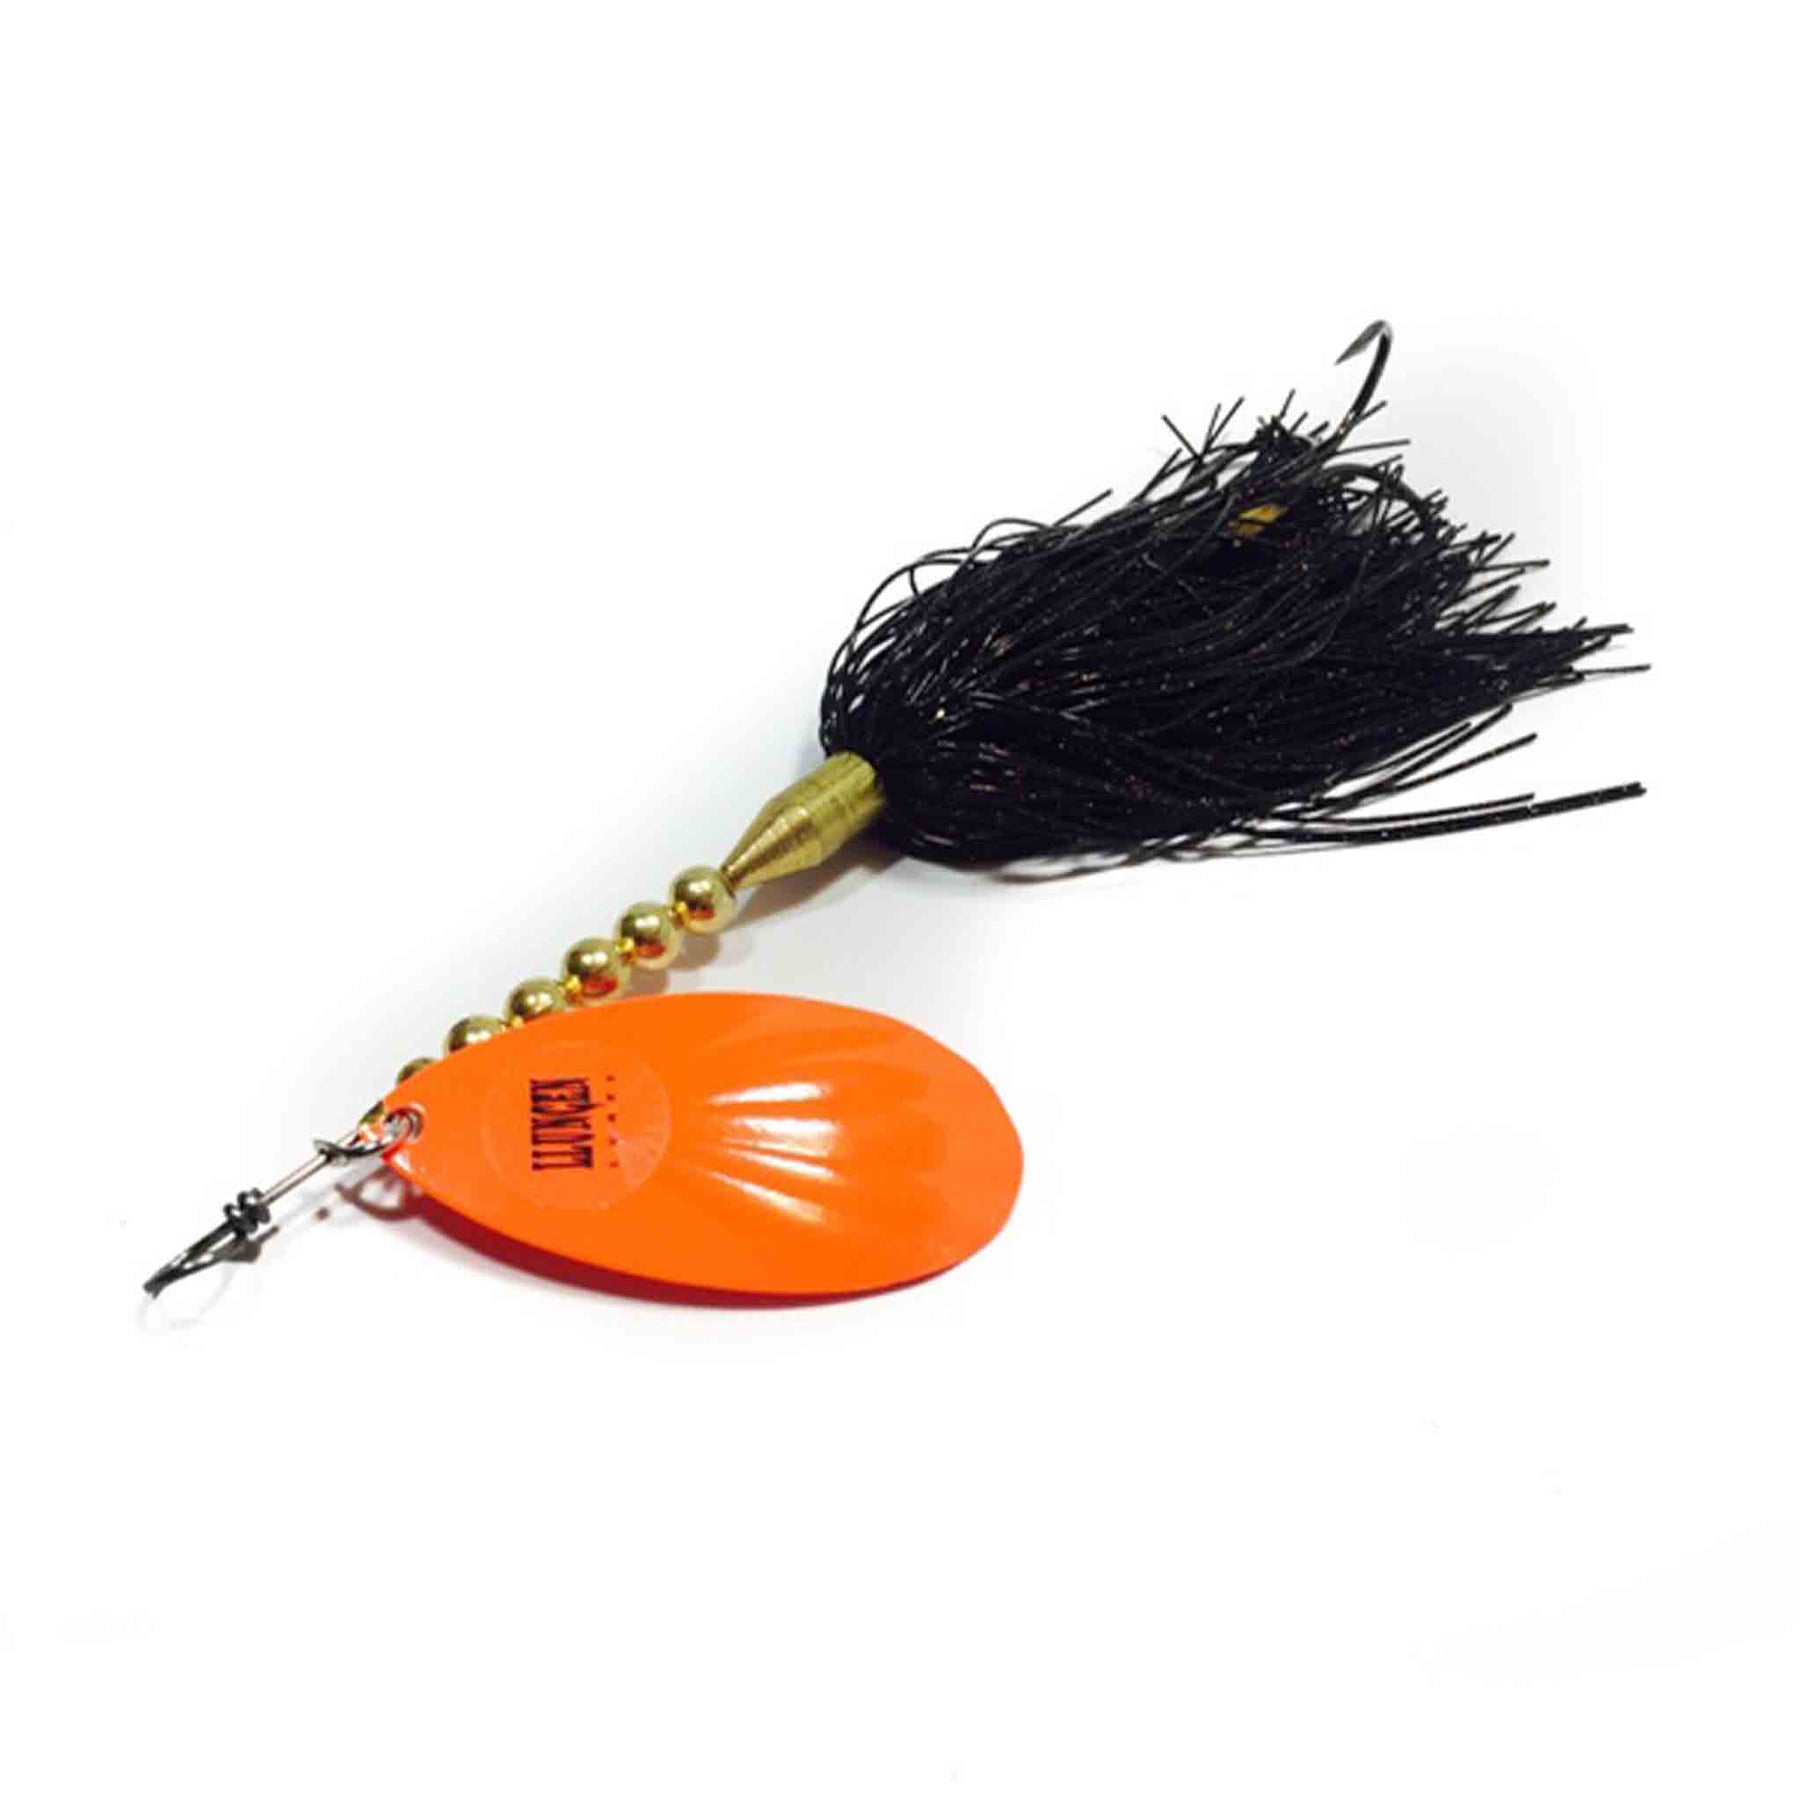 Llungen Lures LT-9 Black / Orange Bucktails